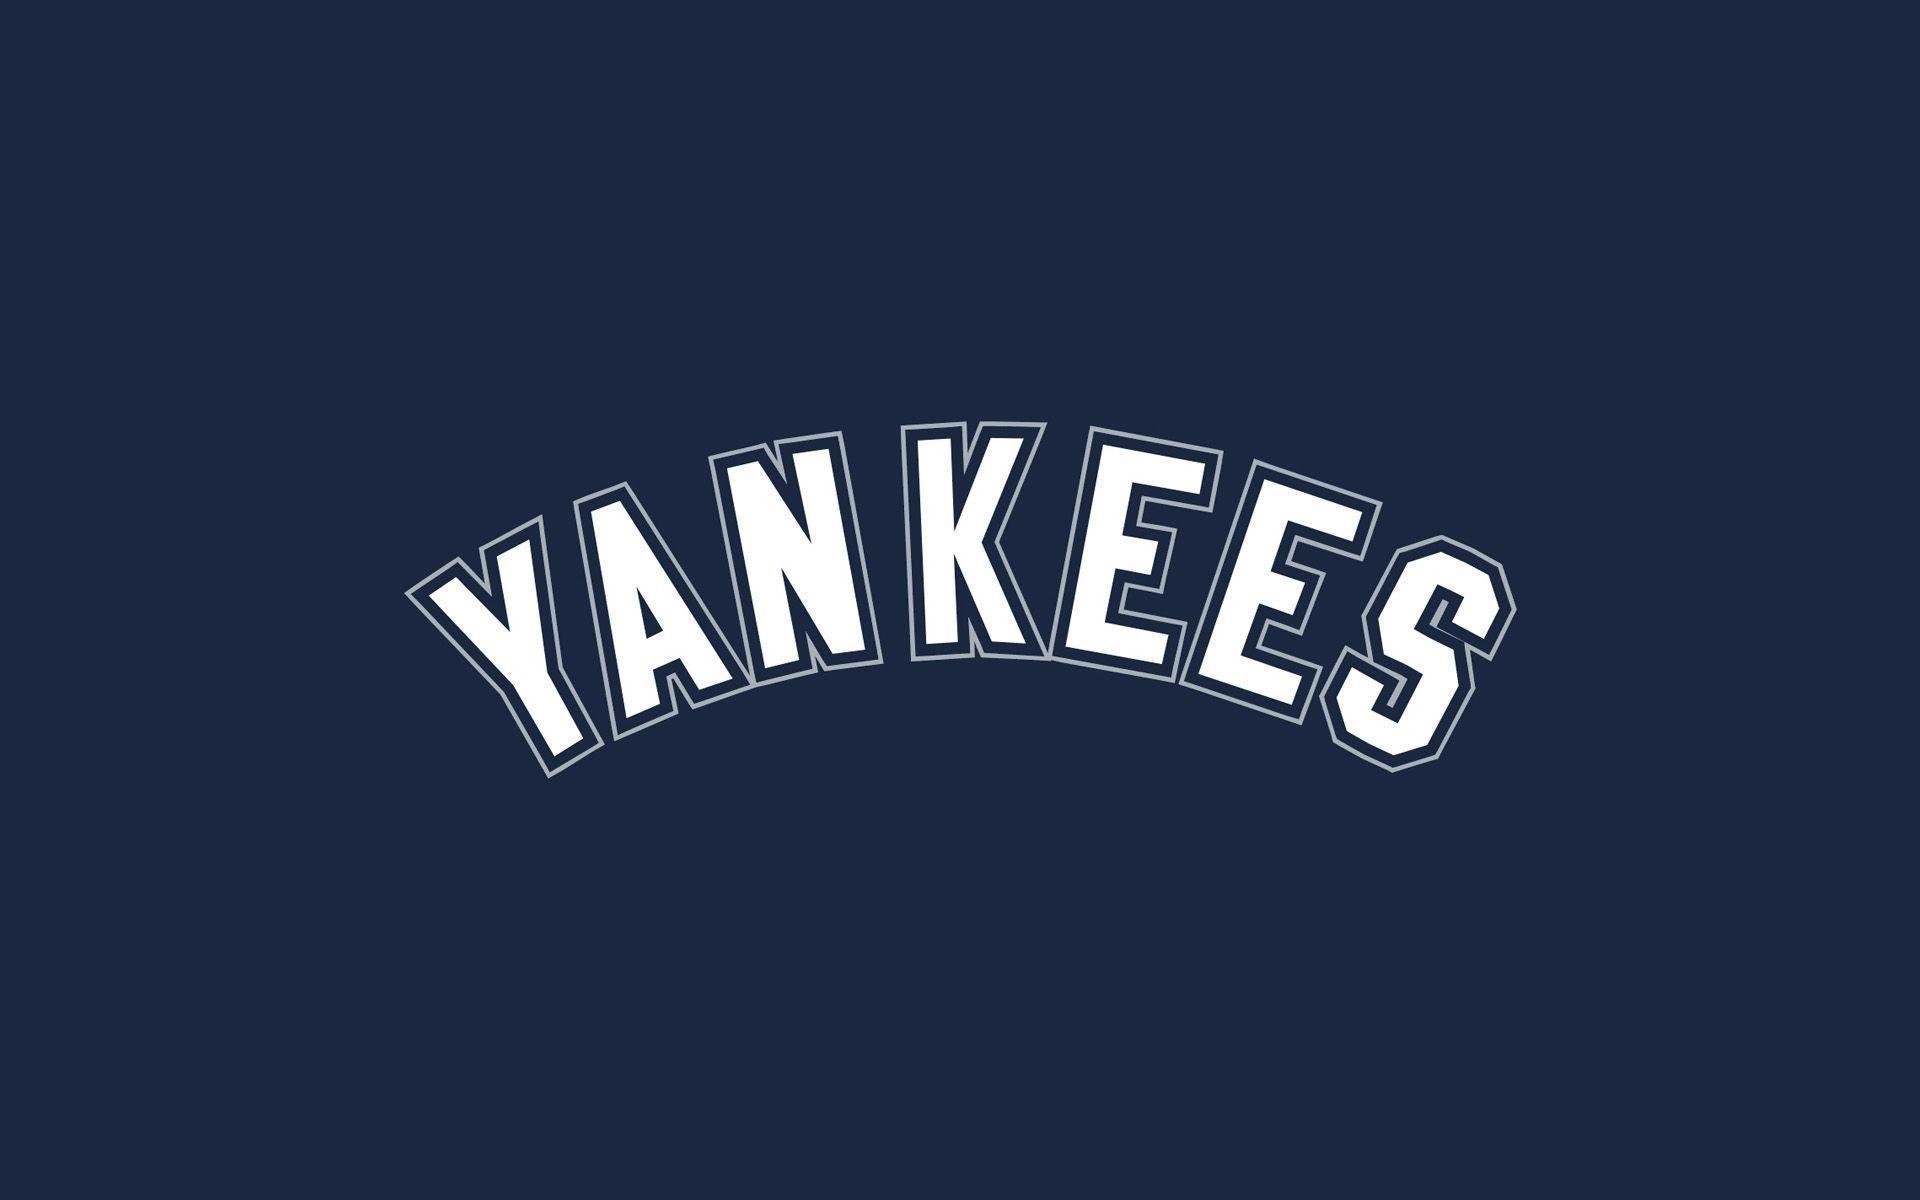 More New York Yankees wallpaper. New York Yankees wallpaper